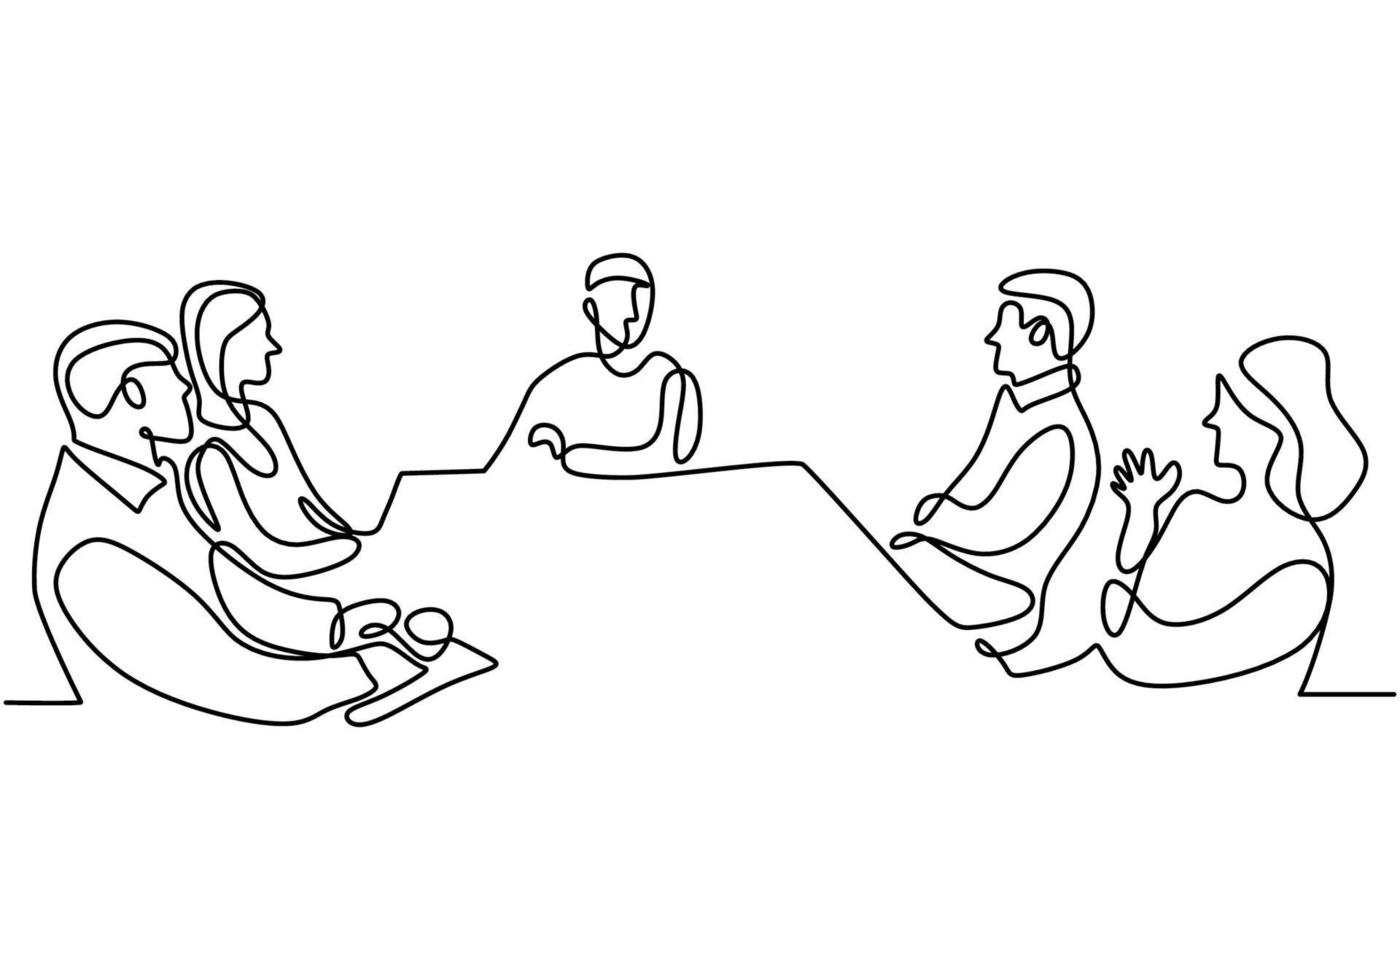 kontinuerlig ritning av en grupp affärsmän som diskuterar i konferensrummet. professionellt ungt affärslag talar nytt projekt isolerad på vit bakgrund. vektor illustration